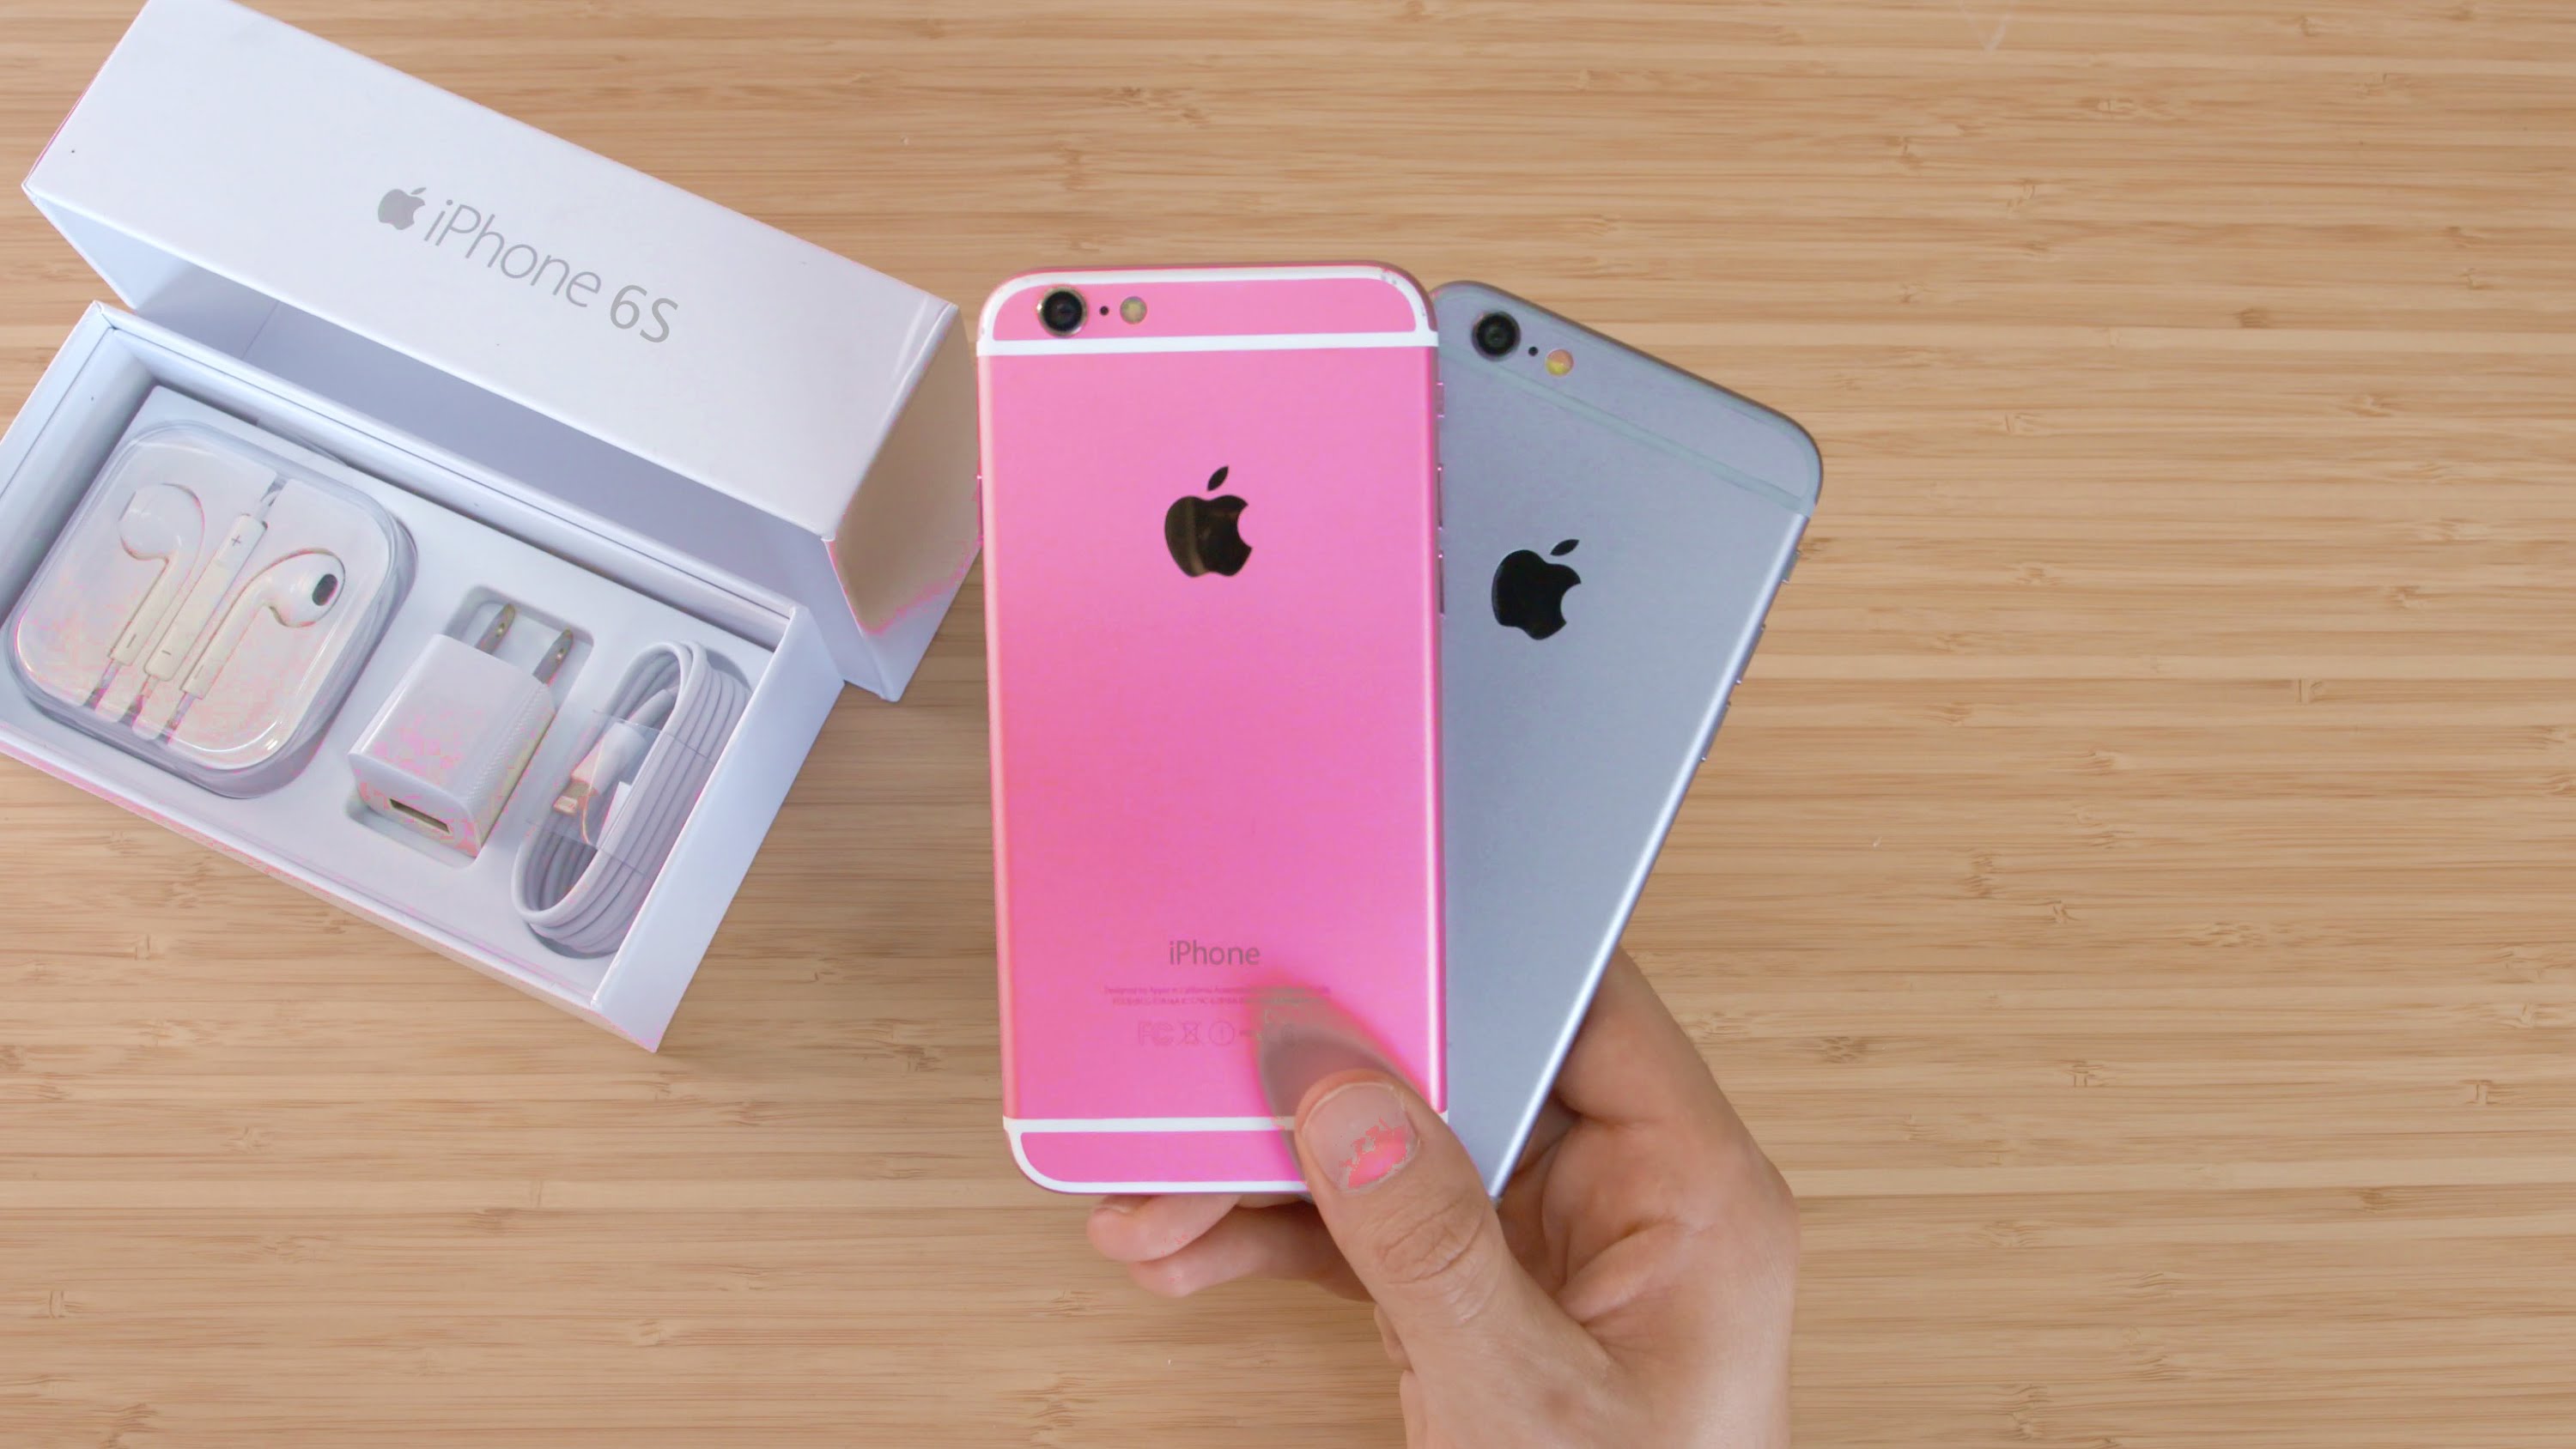 Clone de “iPhone 6s” rosa